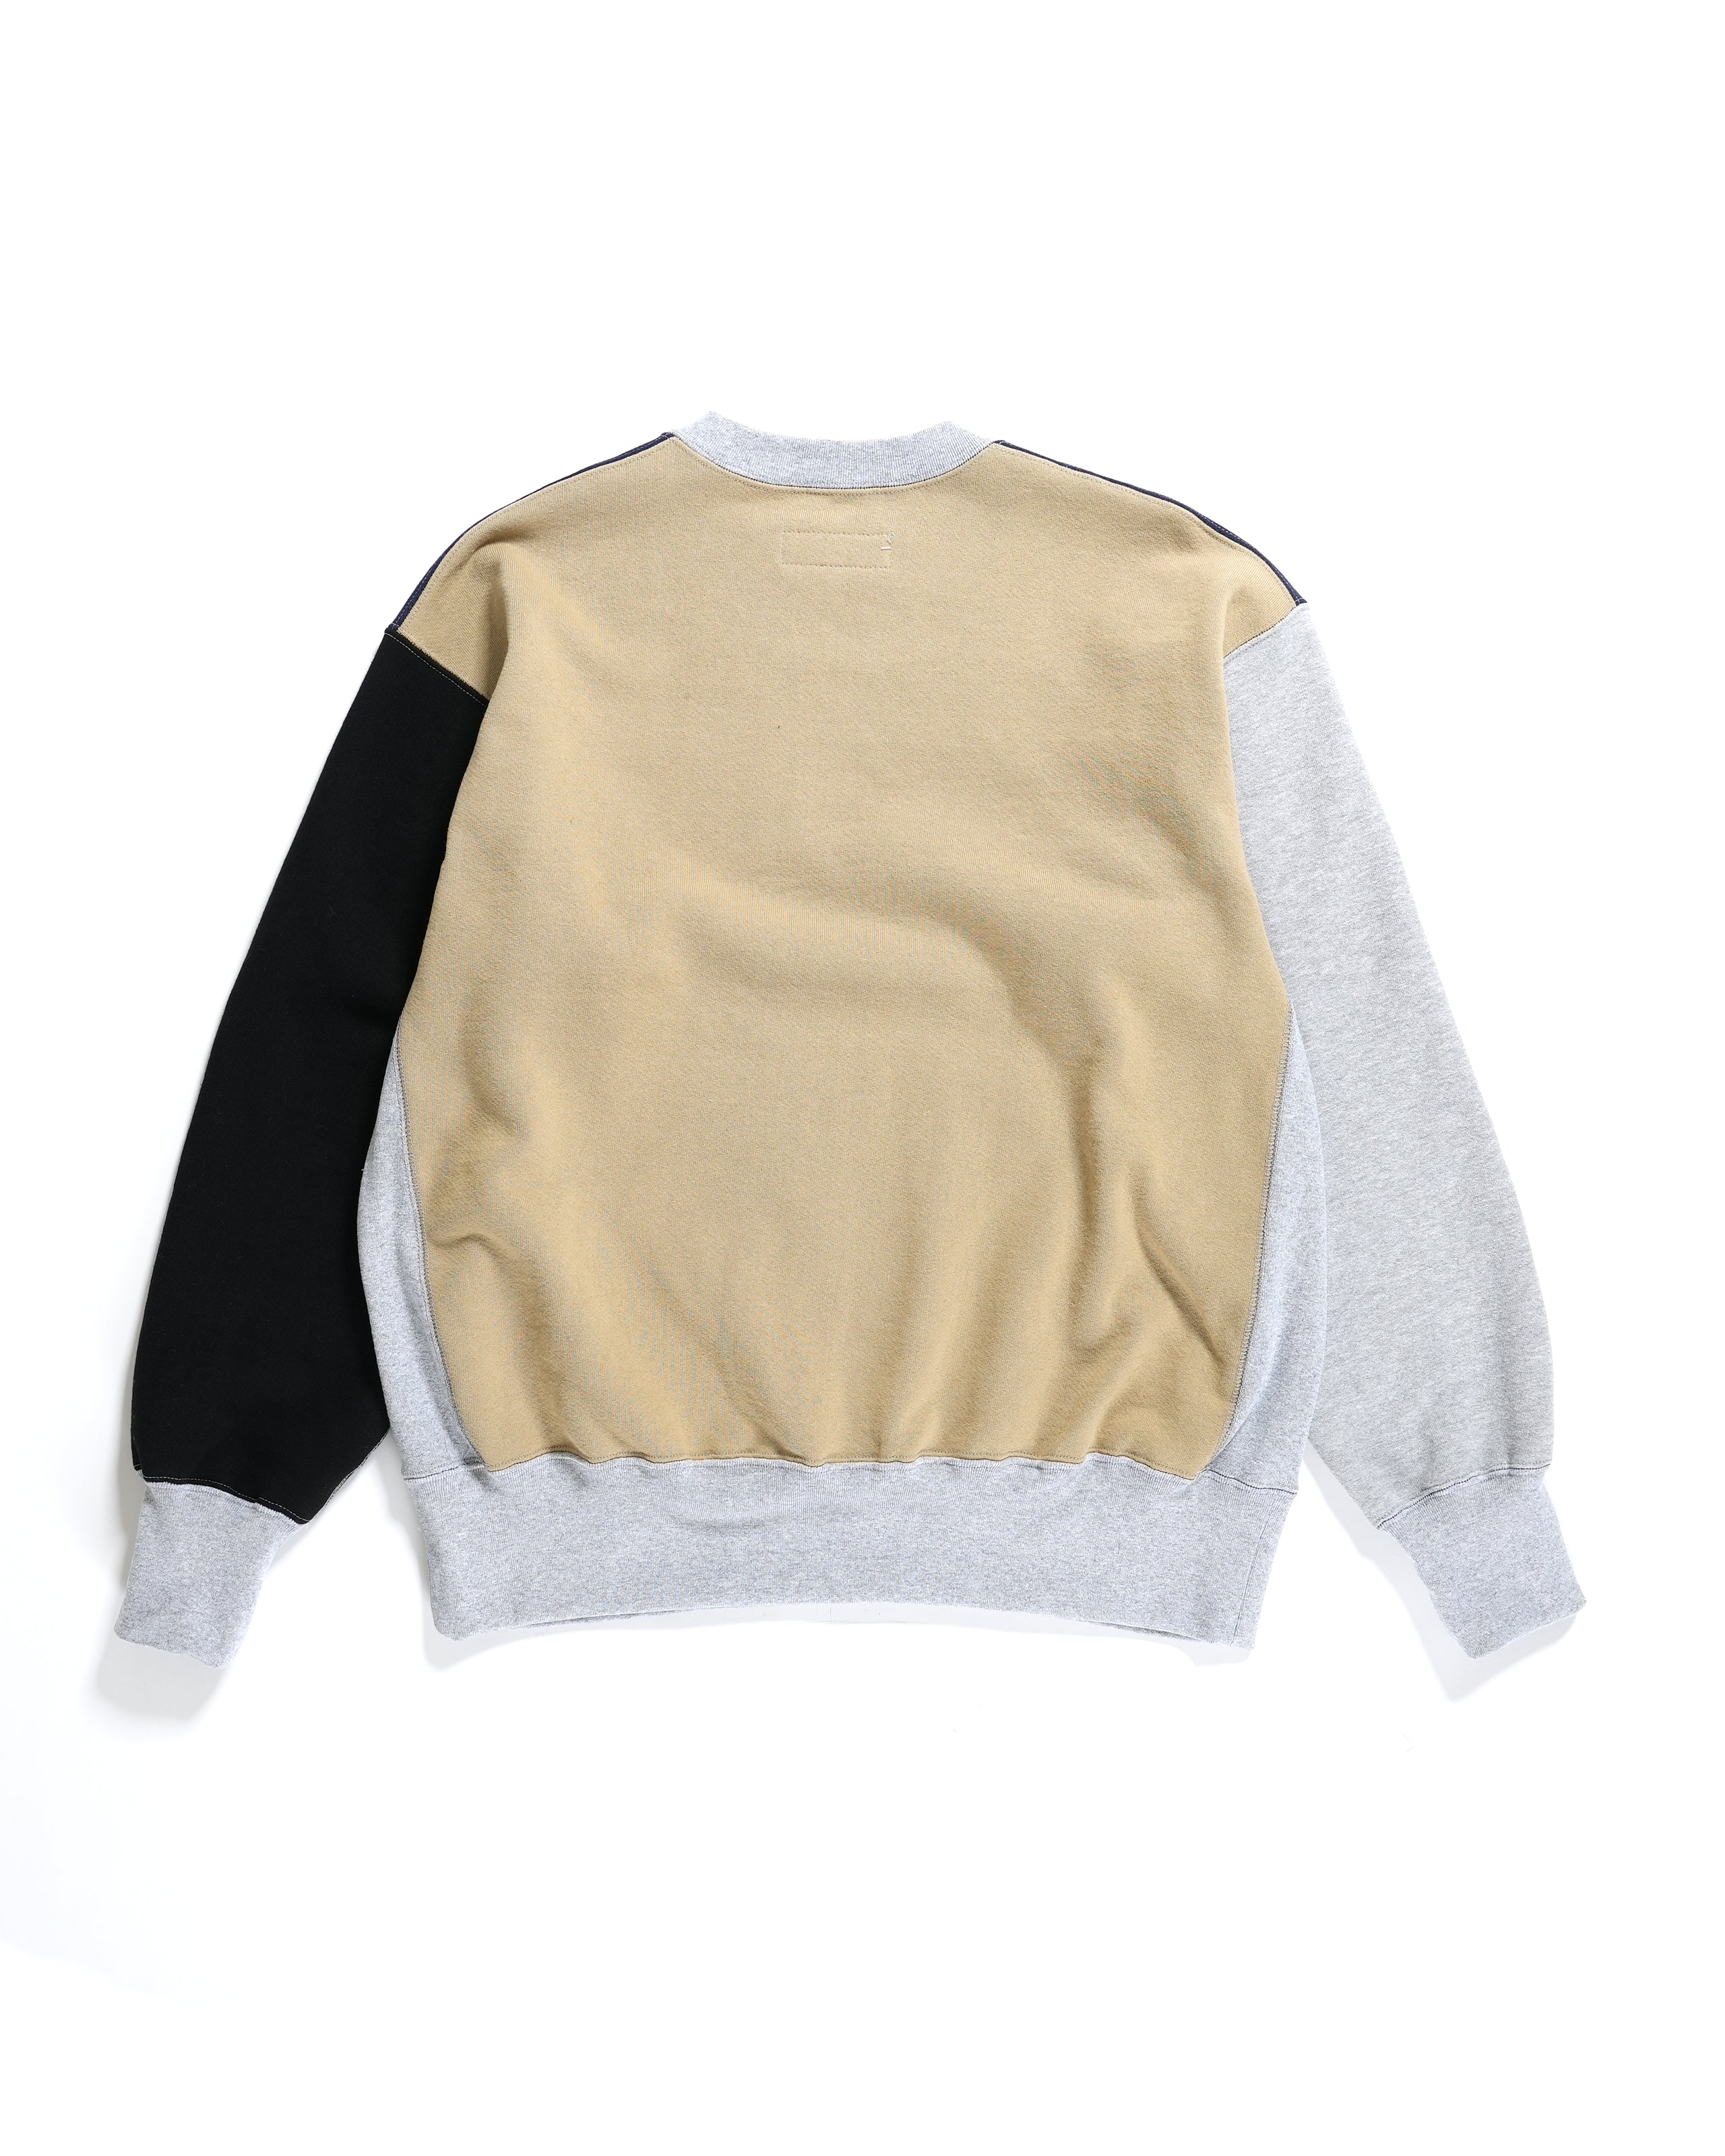 Combo Utility Sweatshirt - Khaki 12oz Cotton Fleece